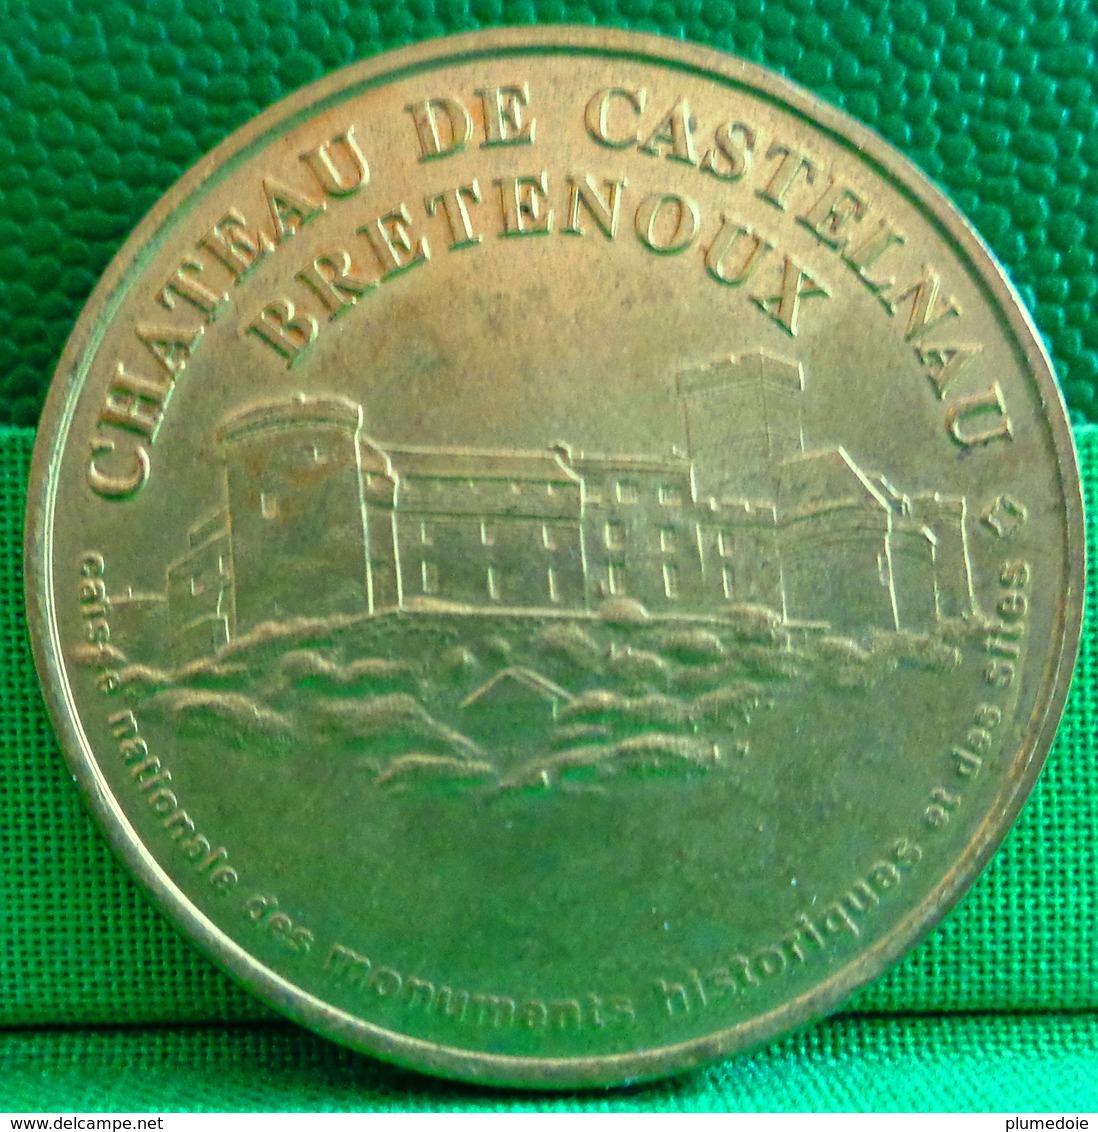 MEDAILLE TOURISTIQUE . LOT . CHATEAU DE CASTELNAU BRETENOUX . CAISSE DES MONUMENTS ET DES SITES . MONNAIE DE PARIS 1998 - Non-datés